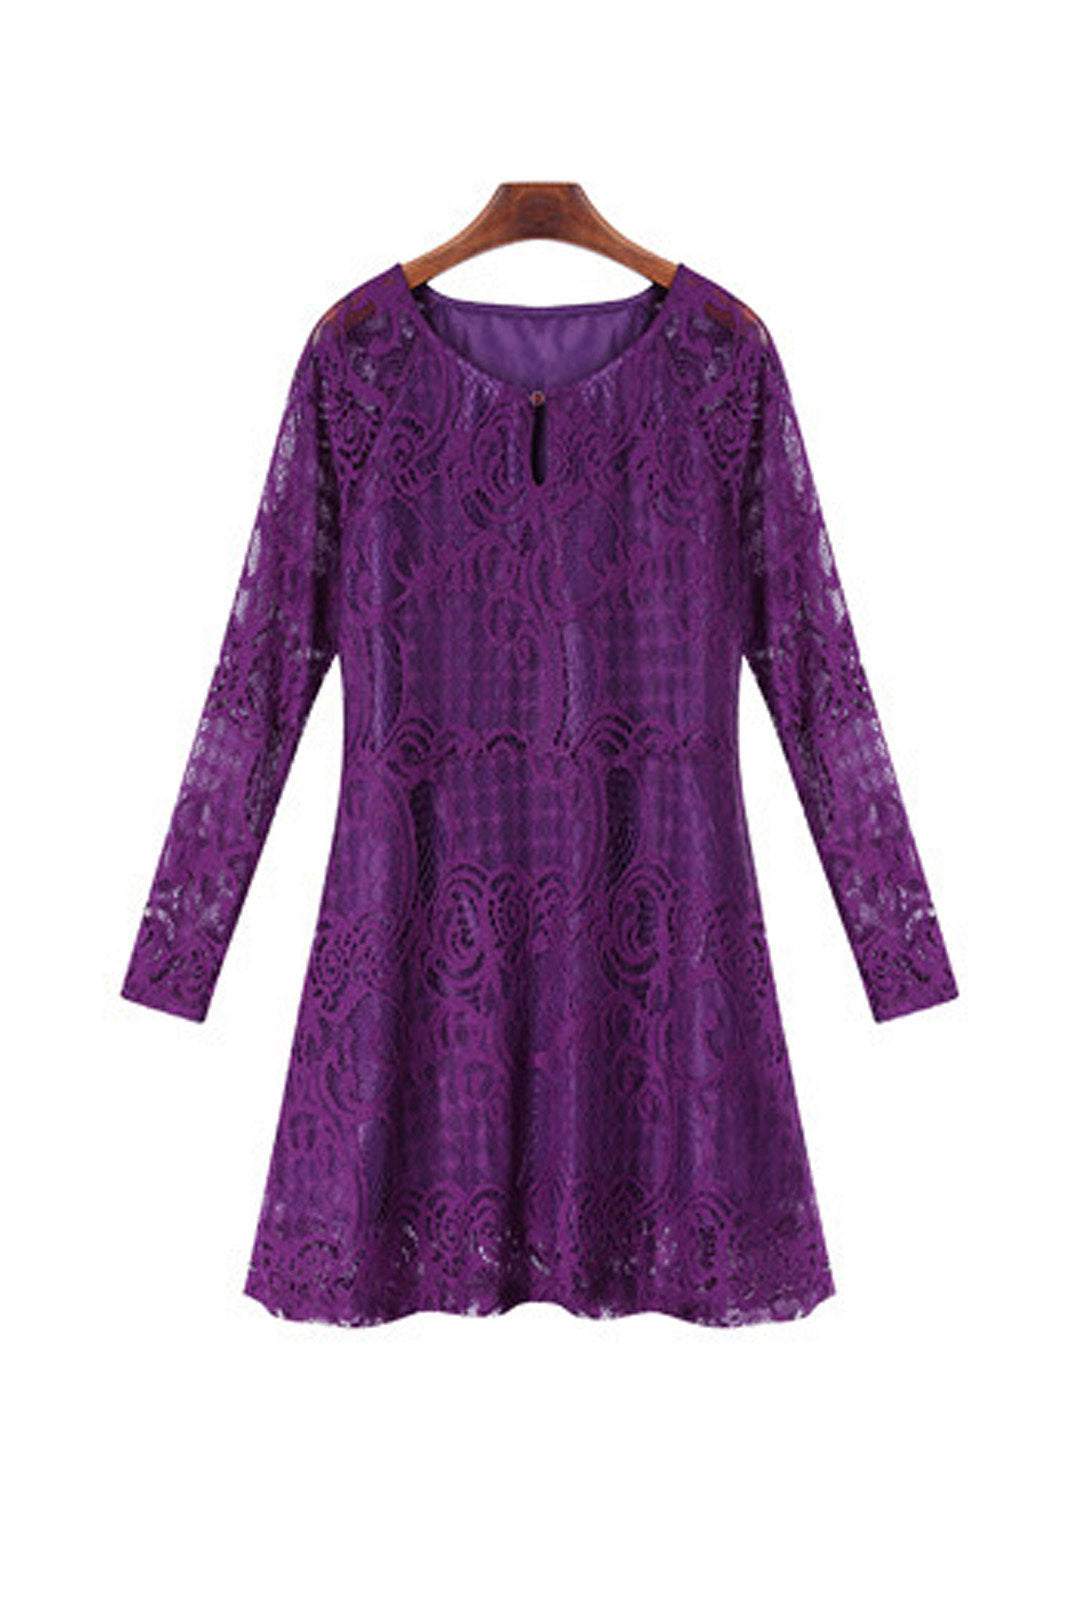 Wholesale Crew Neck Lace Long Sleeve Purple Plus Size Dresses